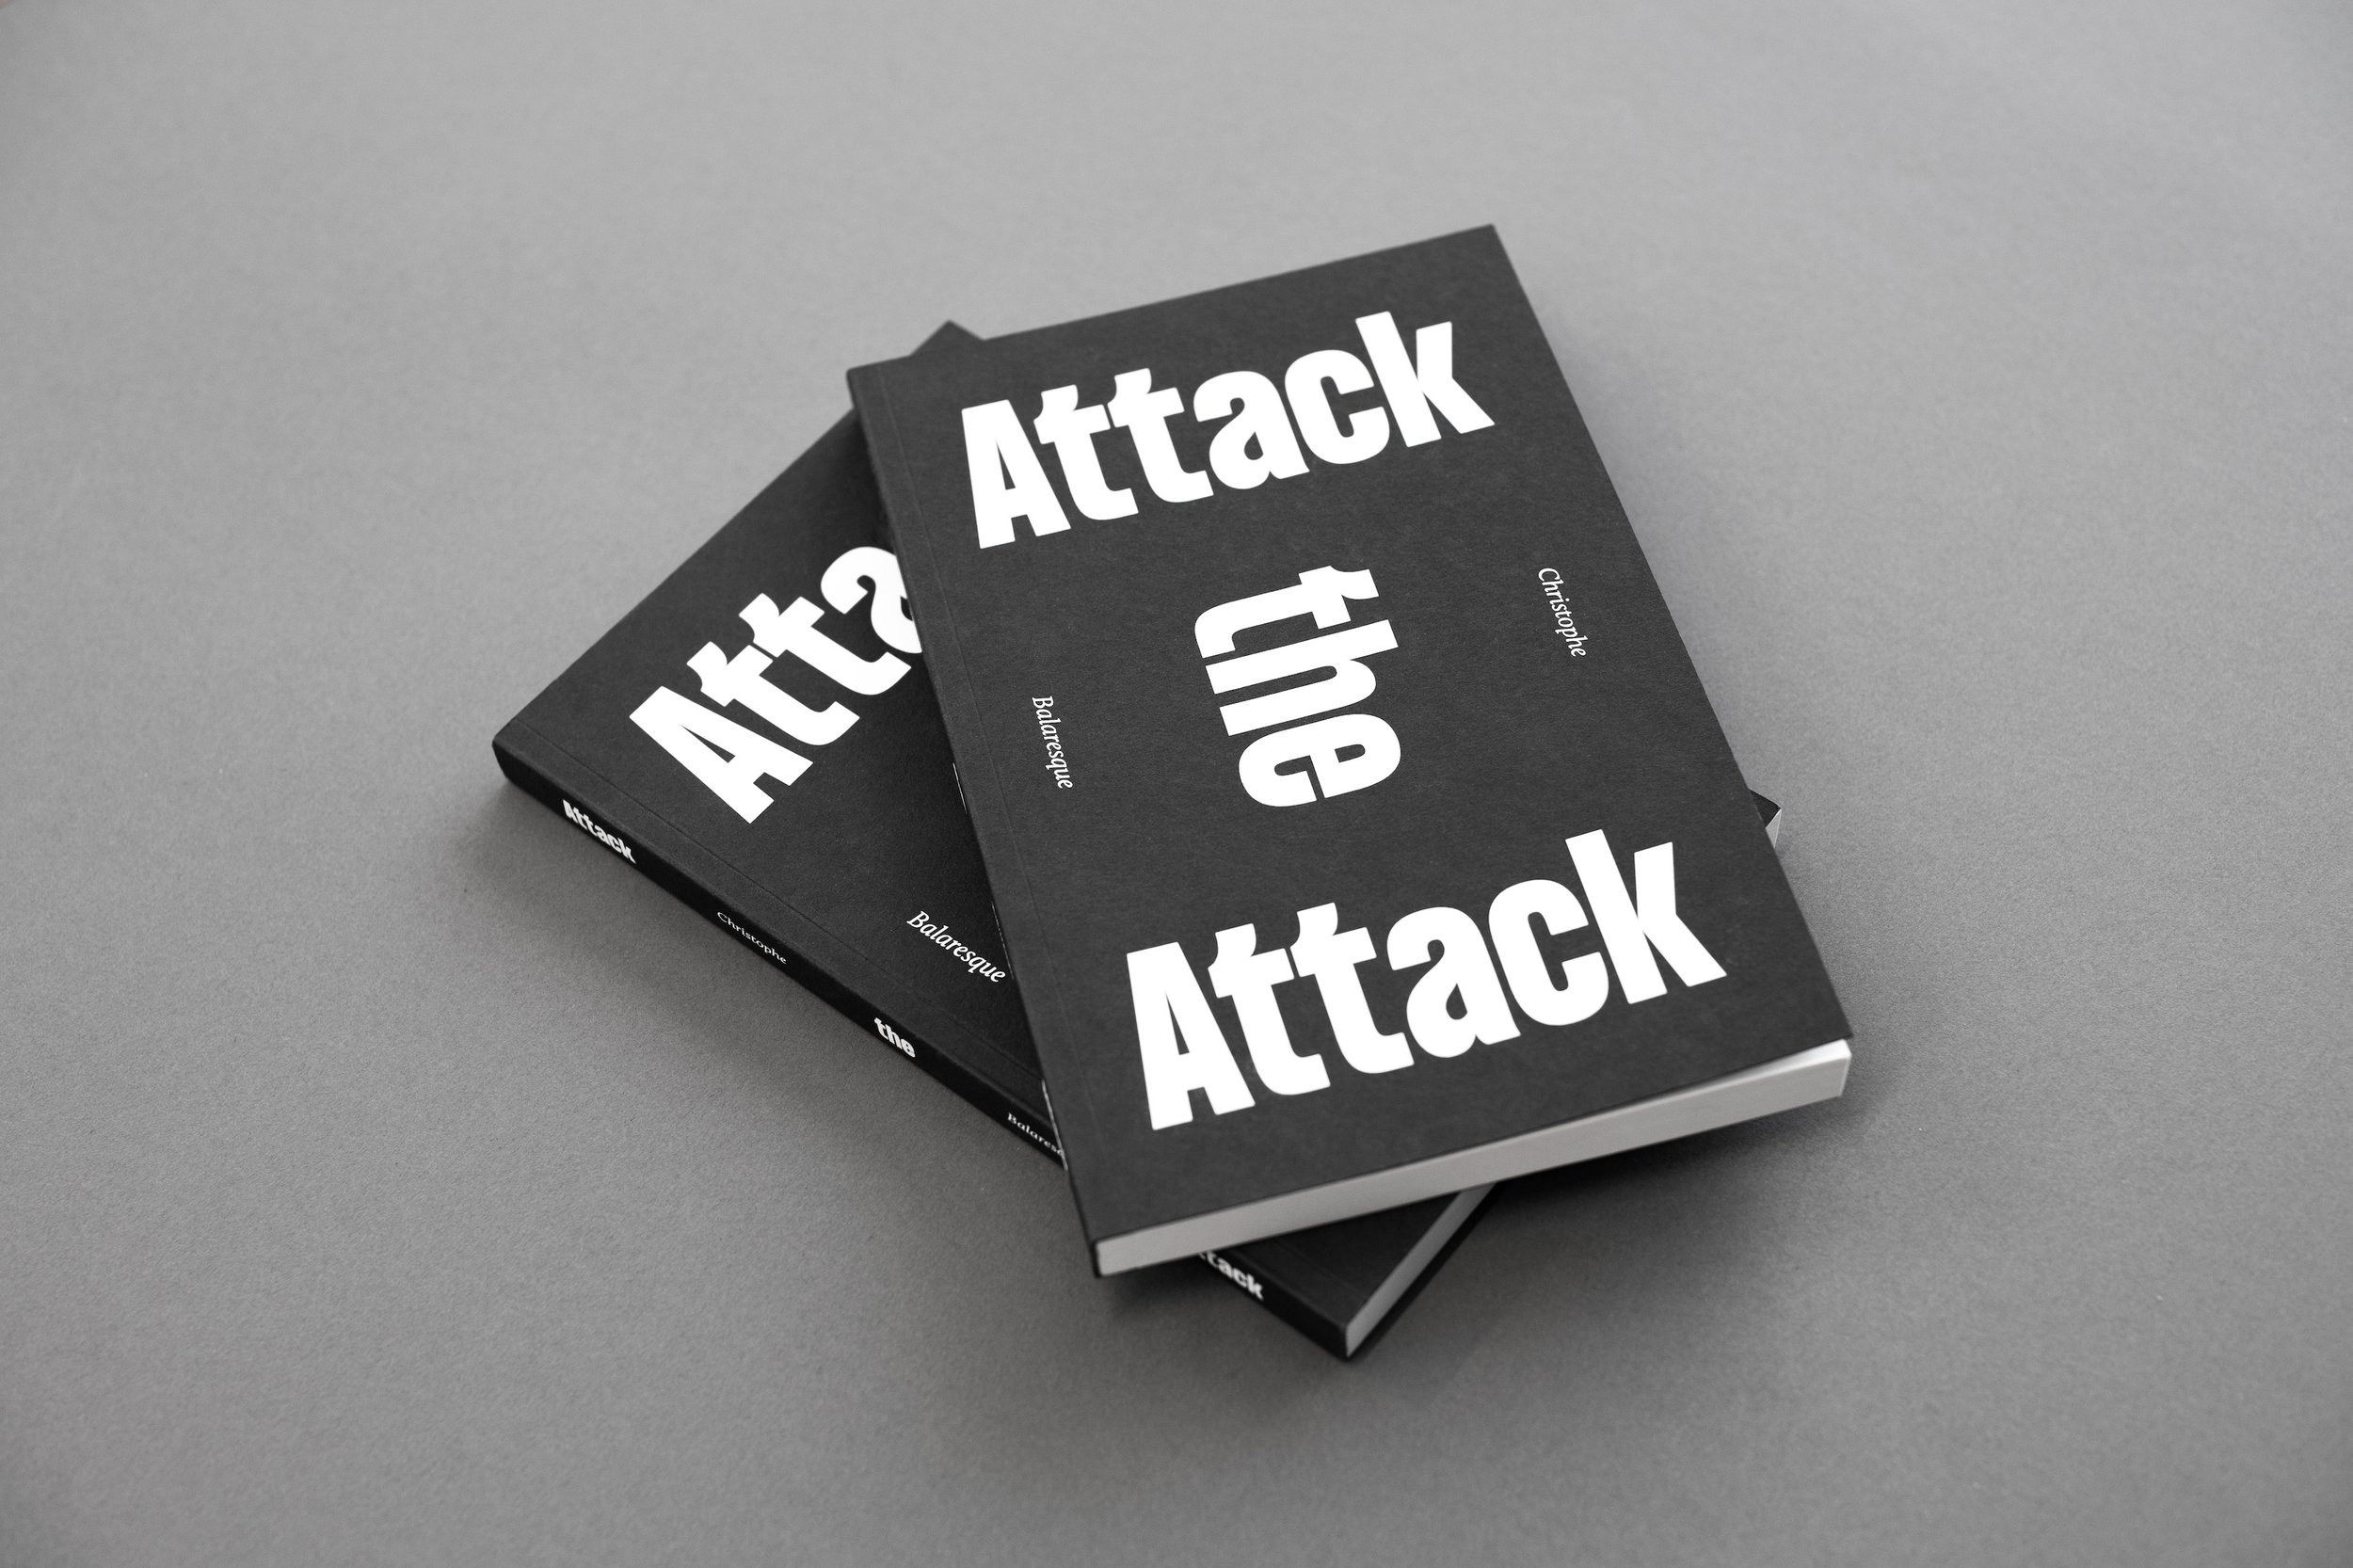 → Attack the Attack